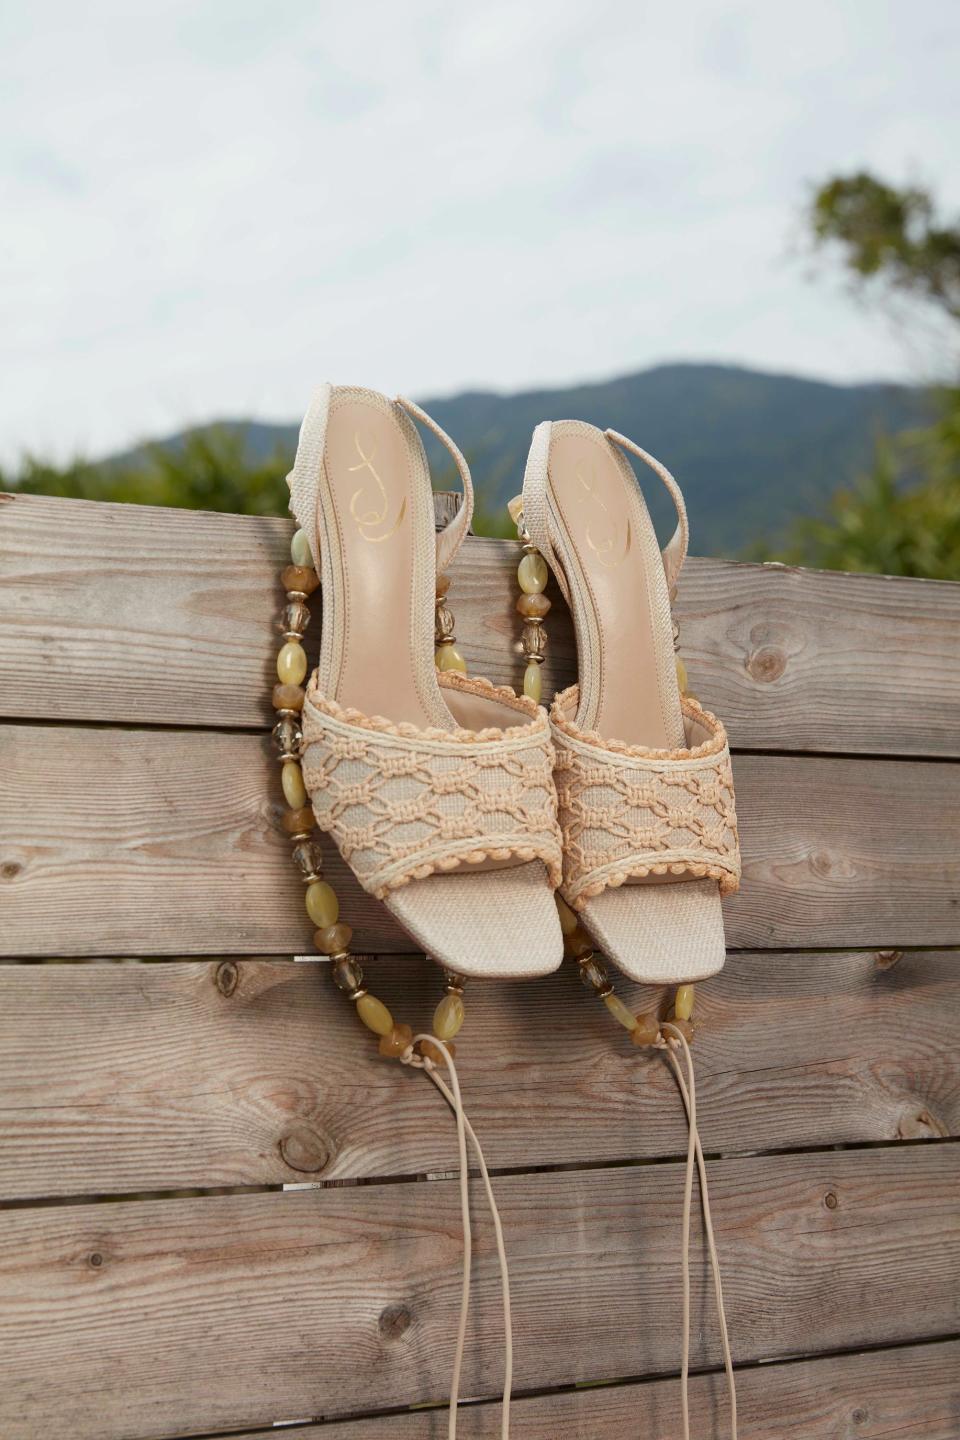 Pamela綁帶涼鞋以花園派對主題為靈感，搭配綁帶的涼鞋及編織材質設計顯得慵懶隨興。$1,600